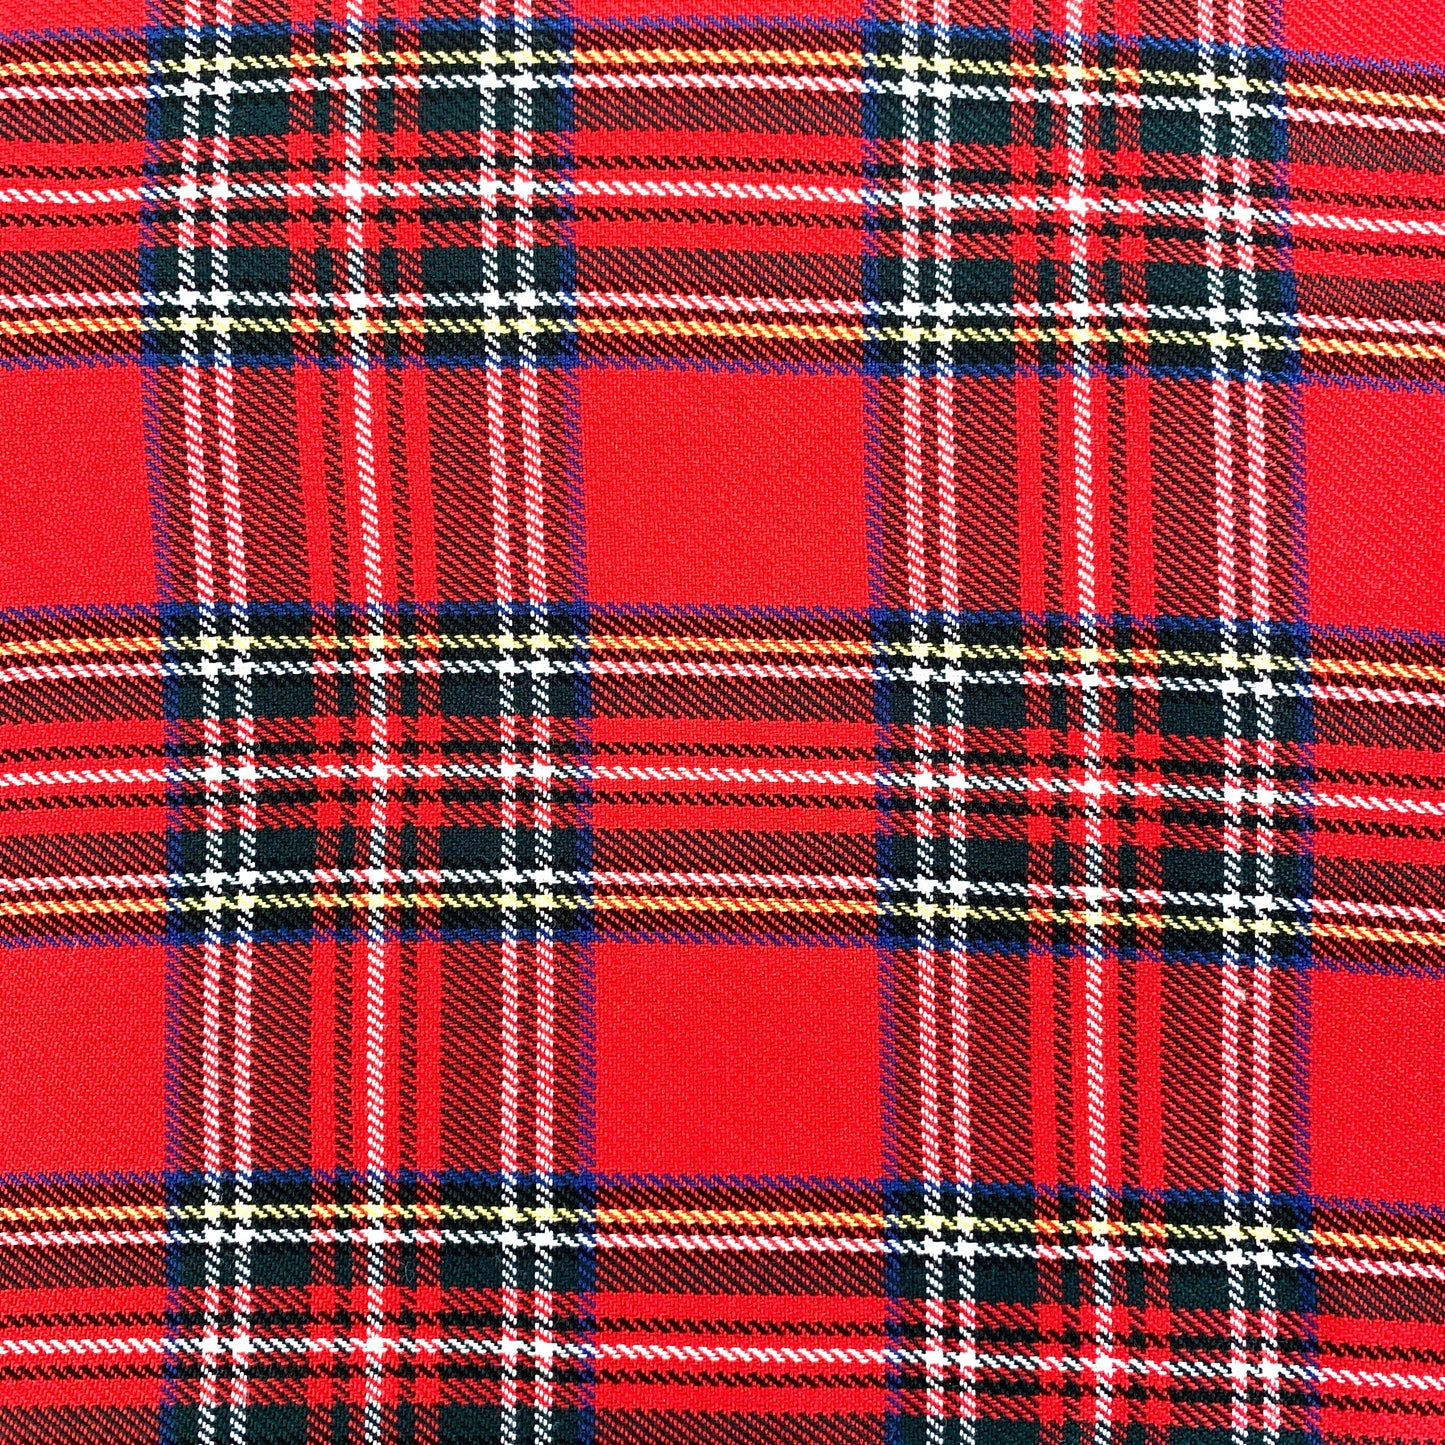 Tartan Fabric Felt Sheet - Red